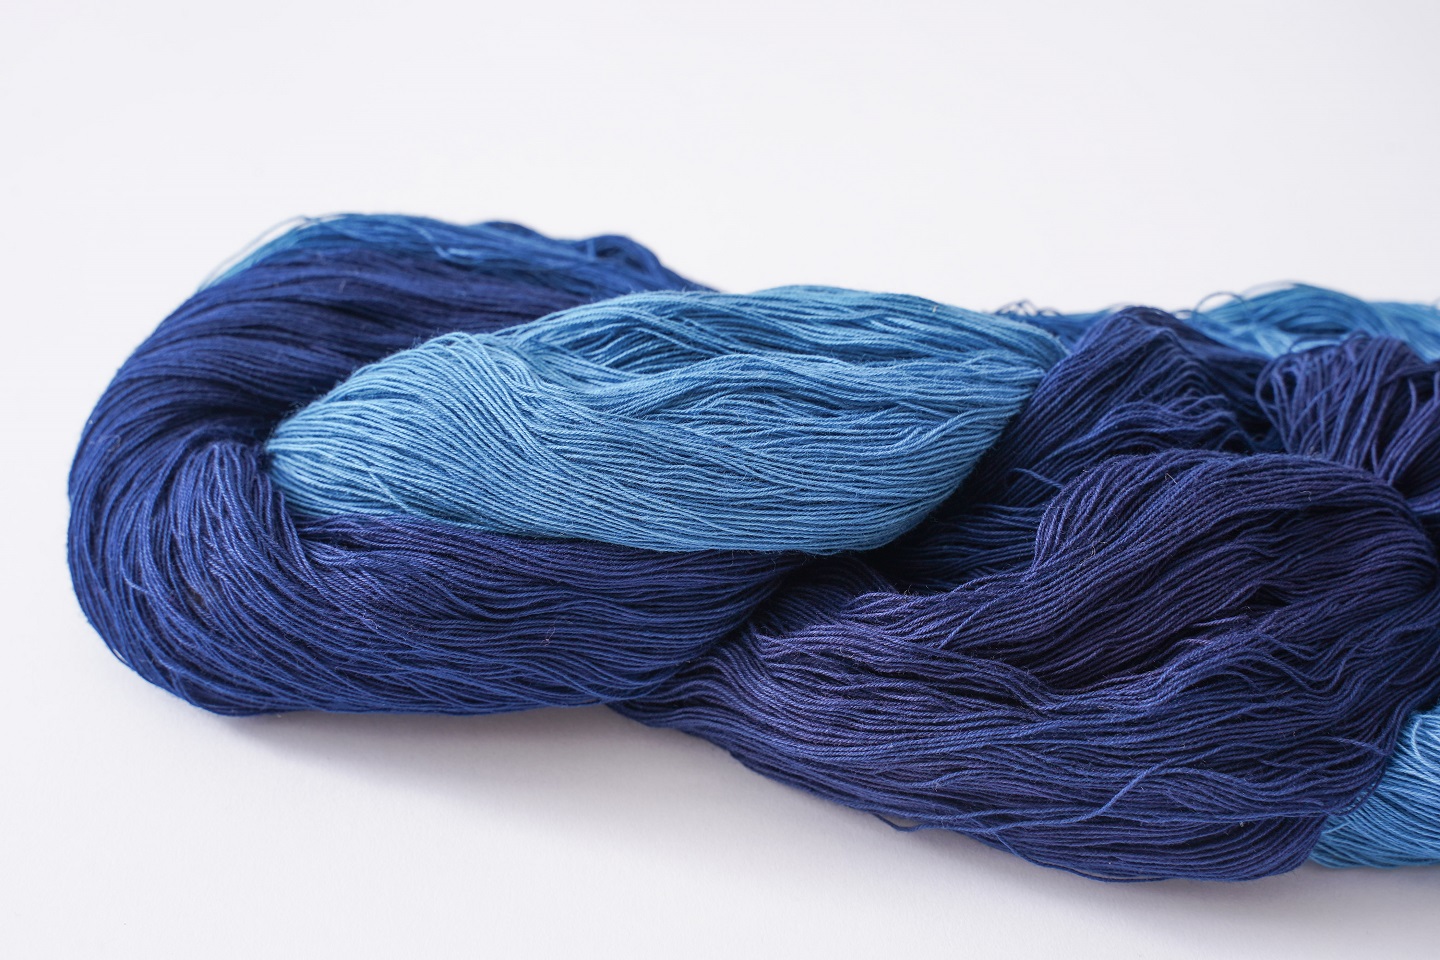 手染め糸による手織り　絣糸染め縦縞木綿布ご希望の長さコメントを！